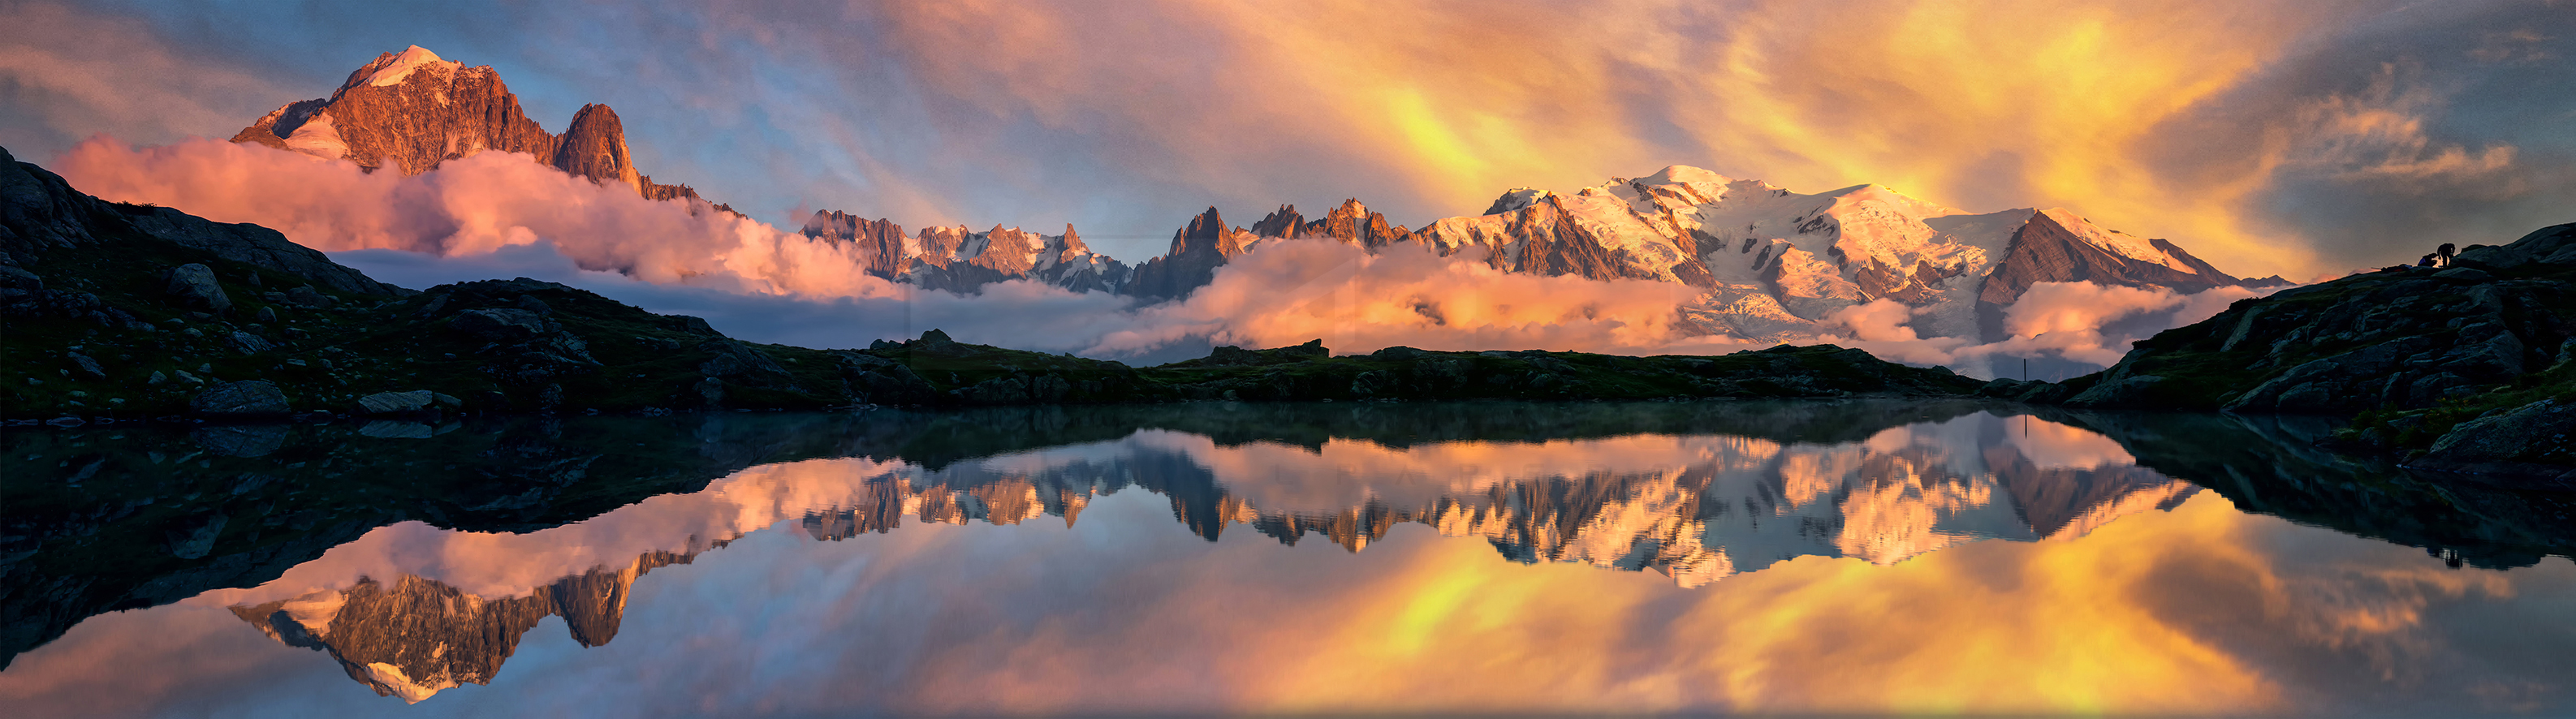 French Alpes Sunrise